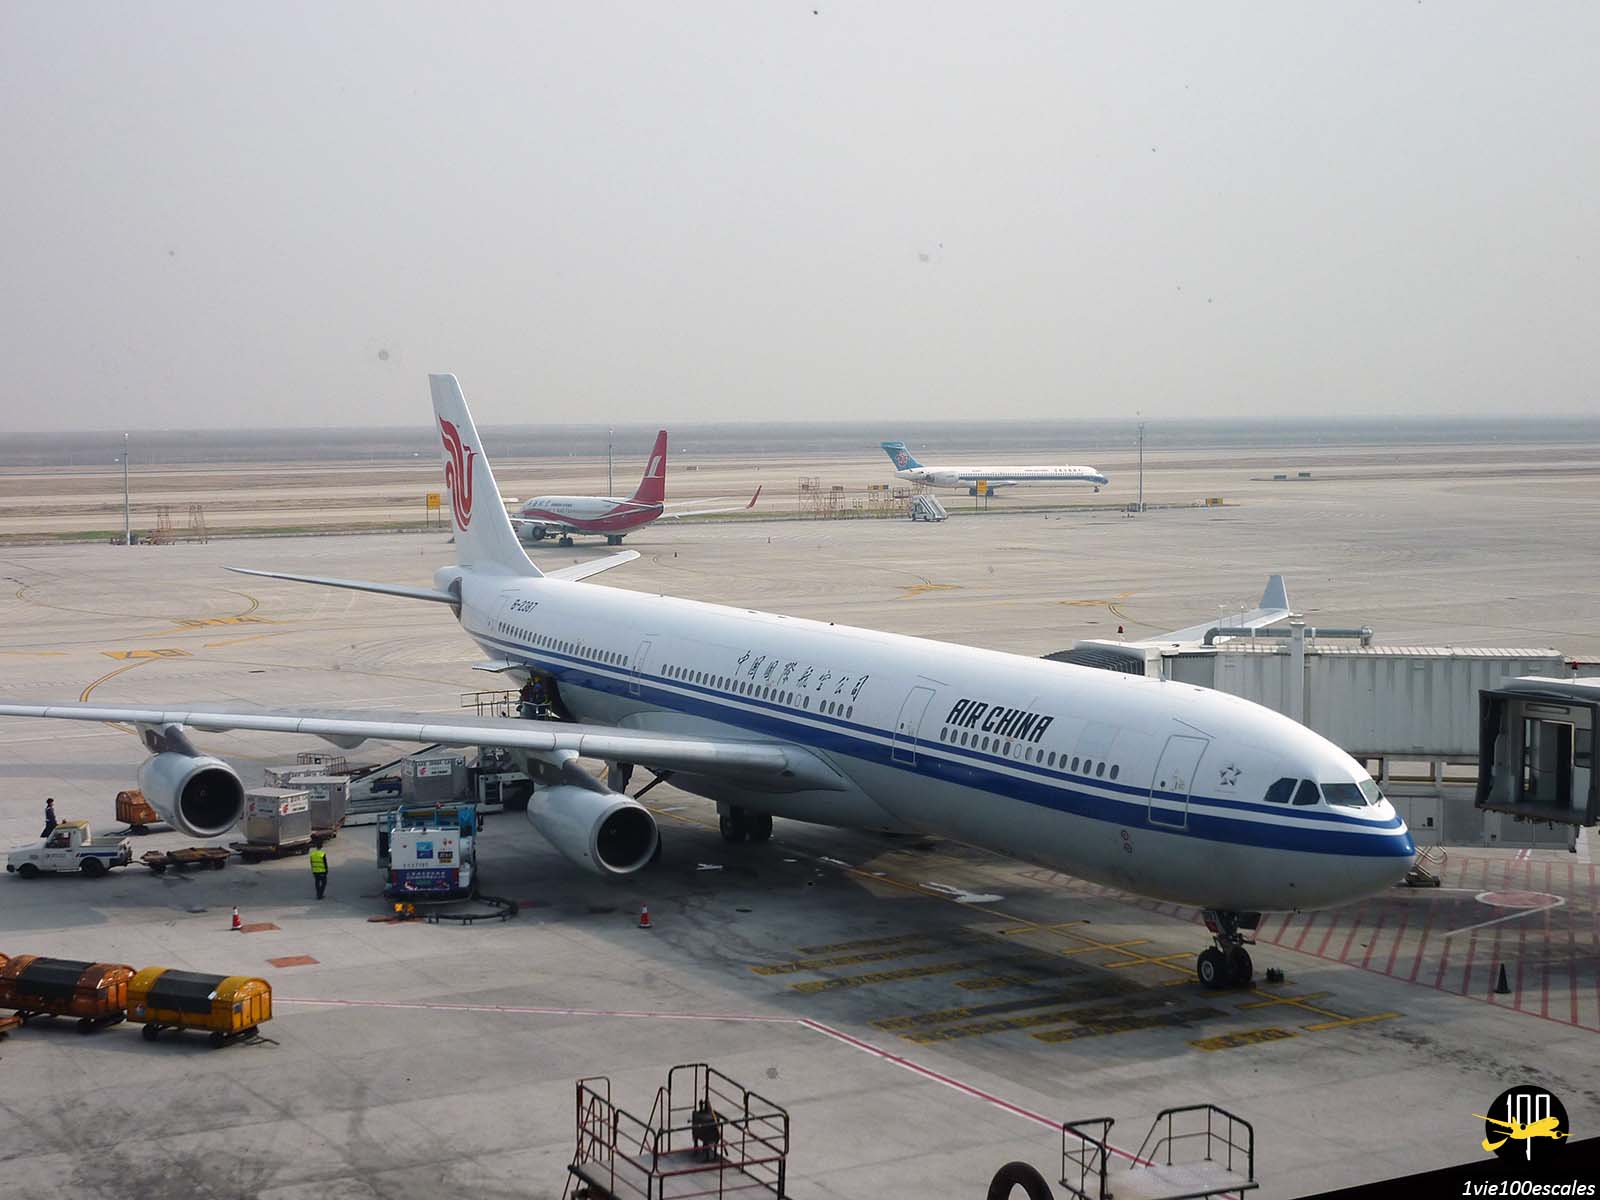 Un avion de la compagnie aérienne Air China sur le tarmac de l'aéroport de Shanghai Pudong